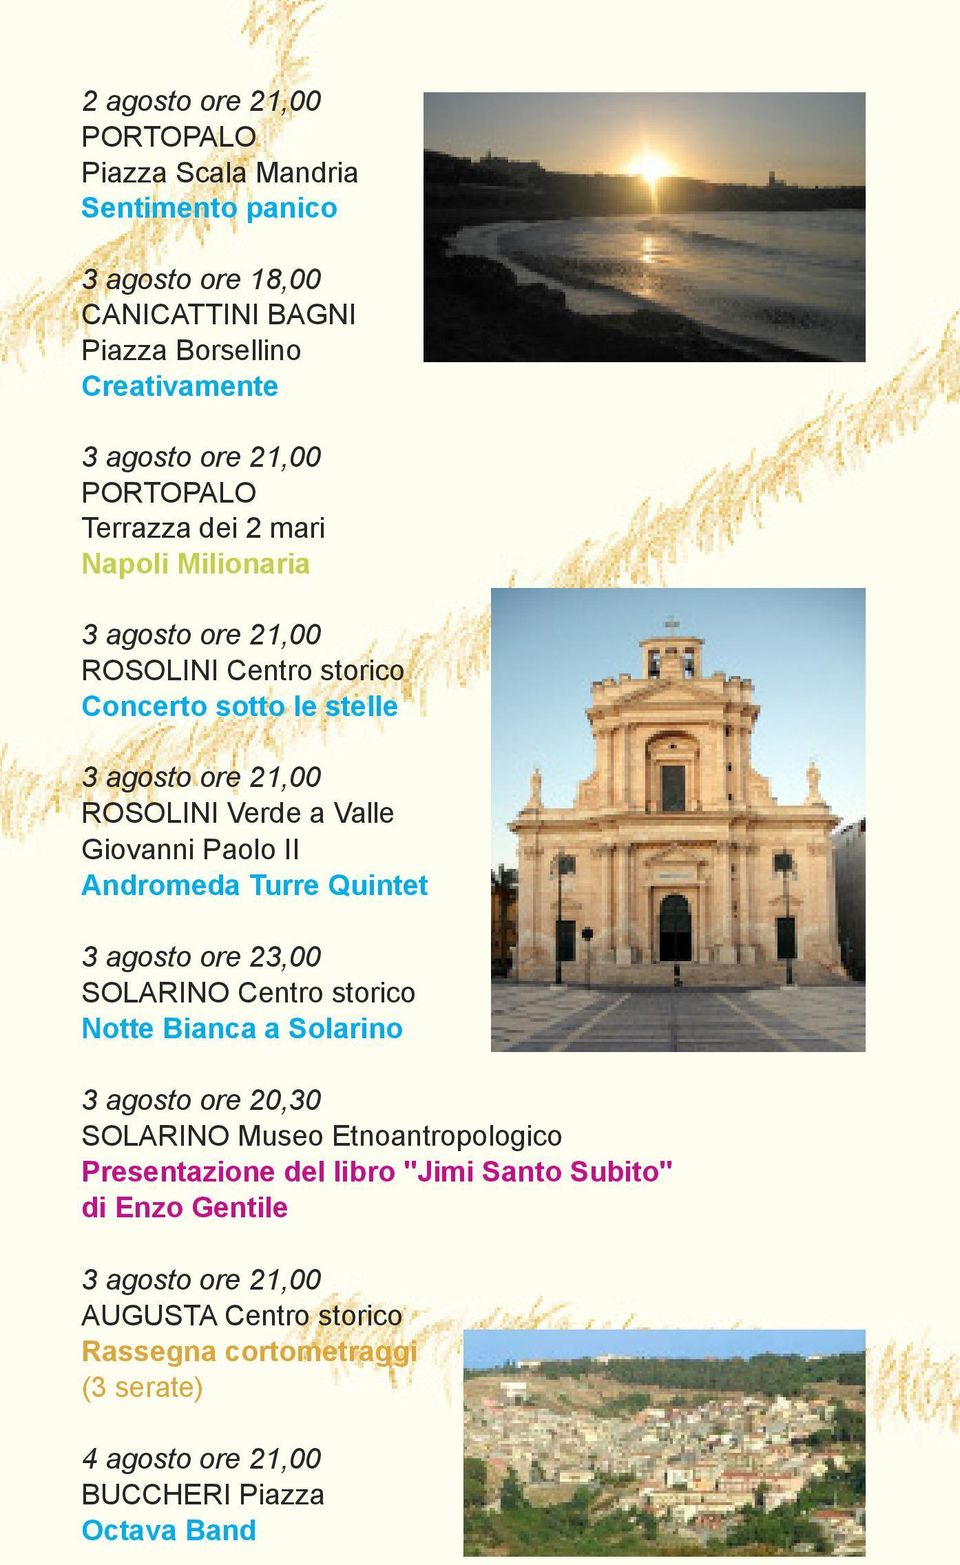 Giovanni Paolo II Andromeda Turre Quintet 3 agosto ore 23,00 SOLARINO Centro storico Notte Bianca a Solarino 3 agosto ore 20,30 SOLARINO Museo Etnoantropologico